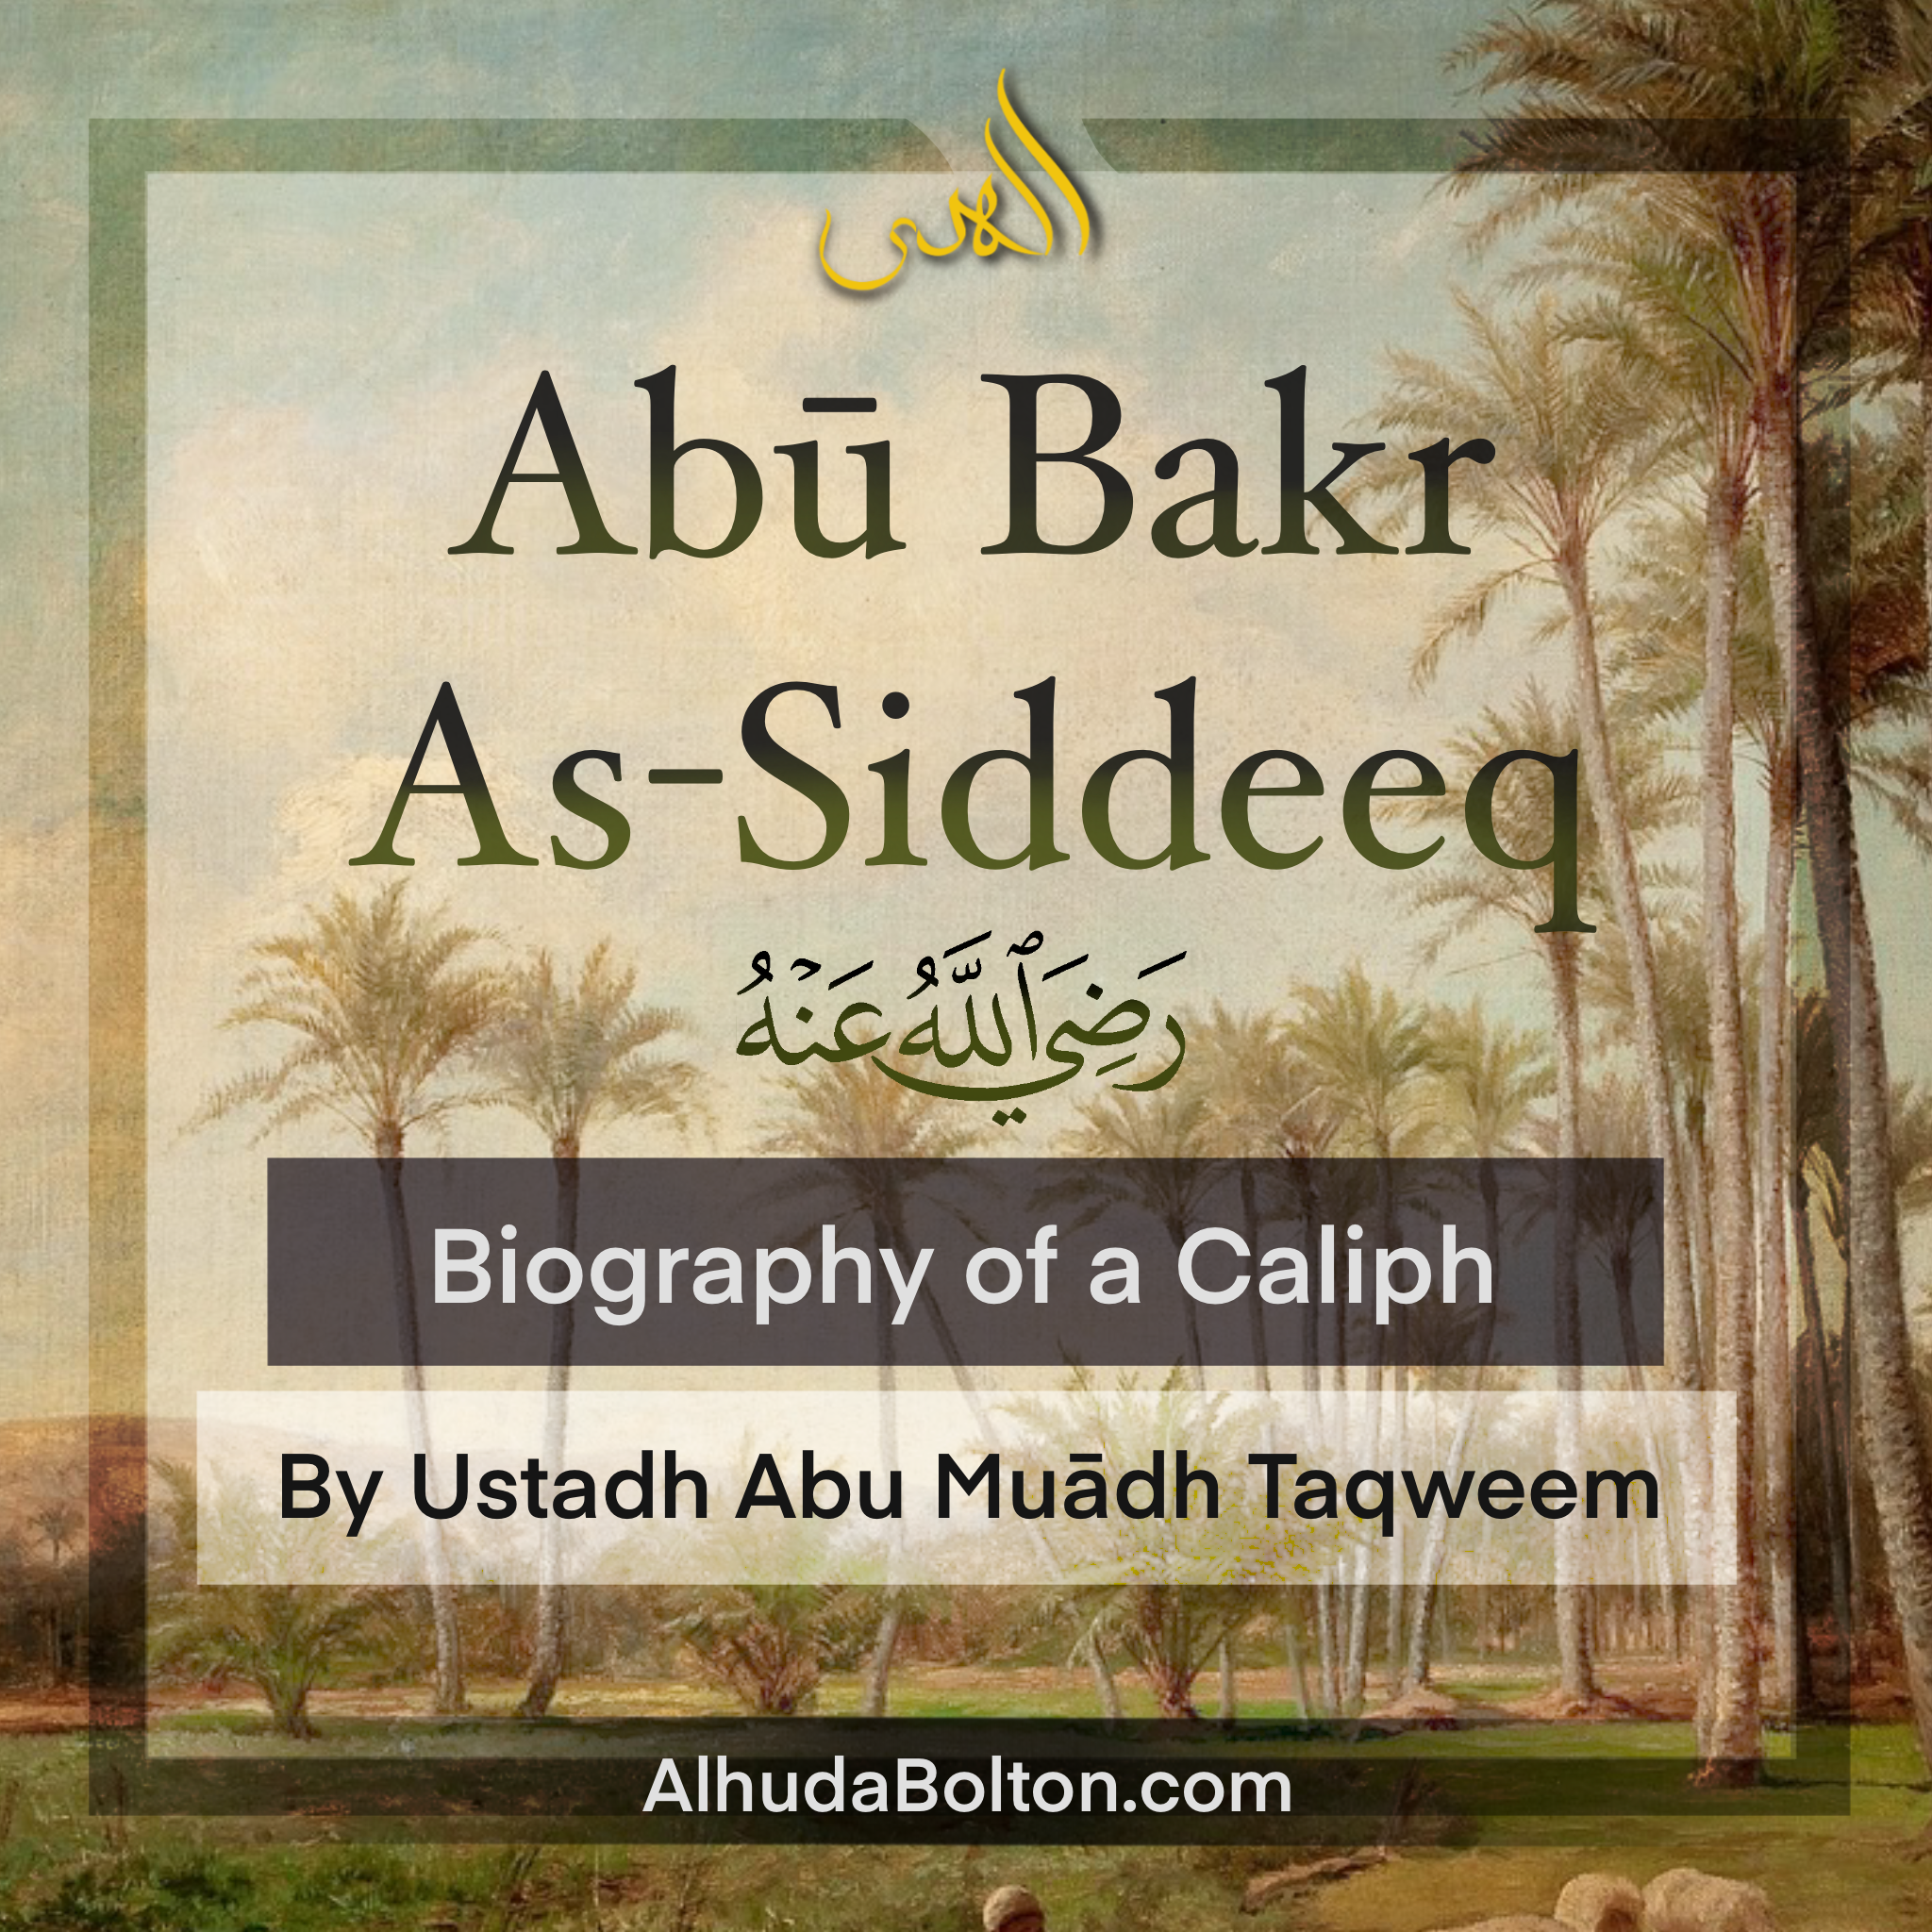 Biography of a Caliph: Abū Bakr As-Siddeeq